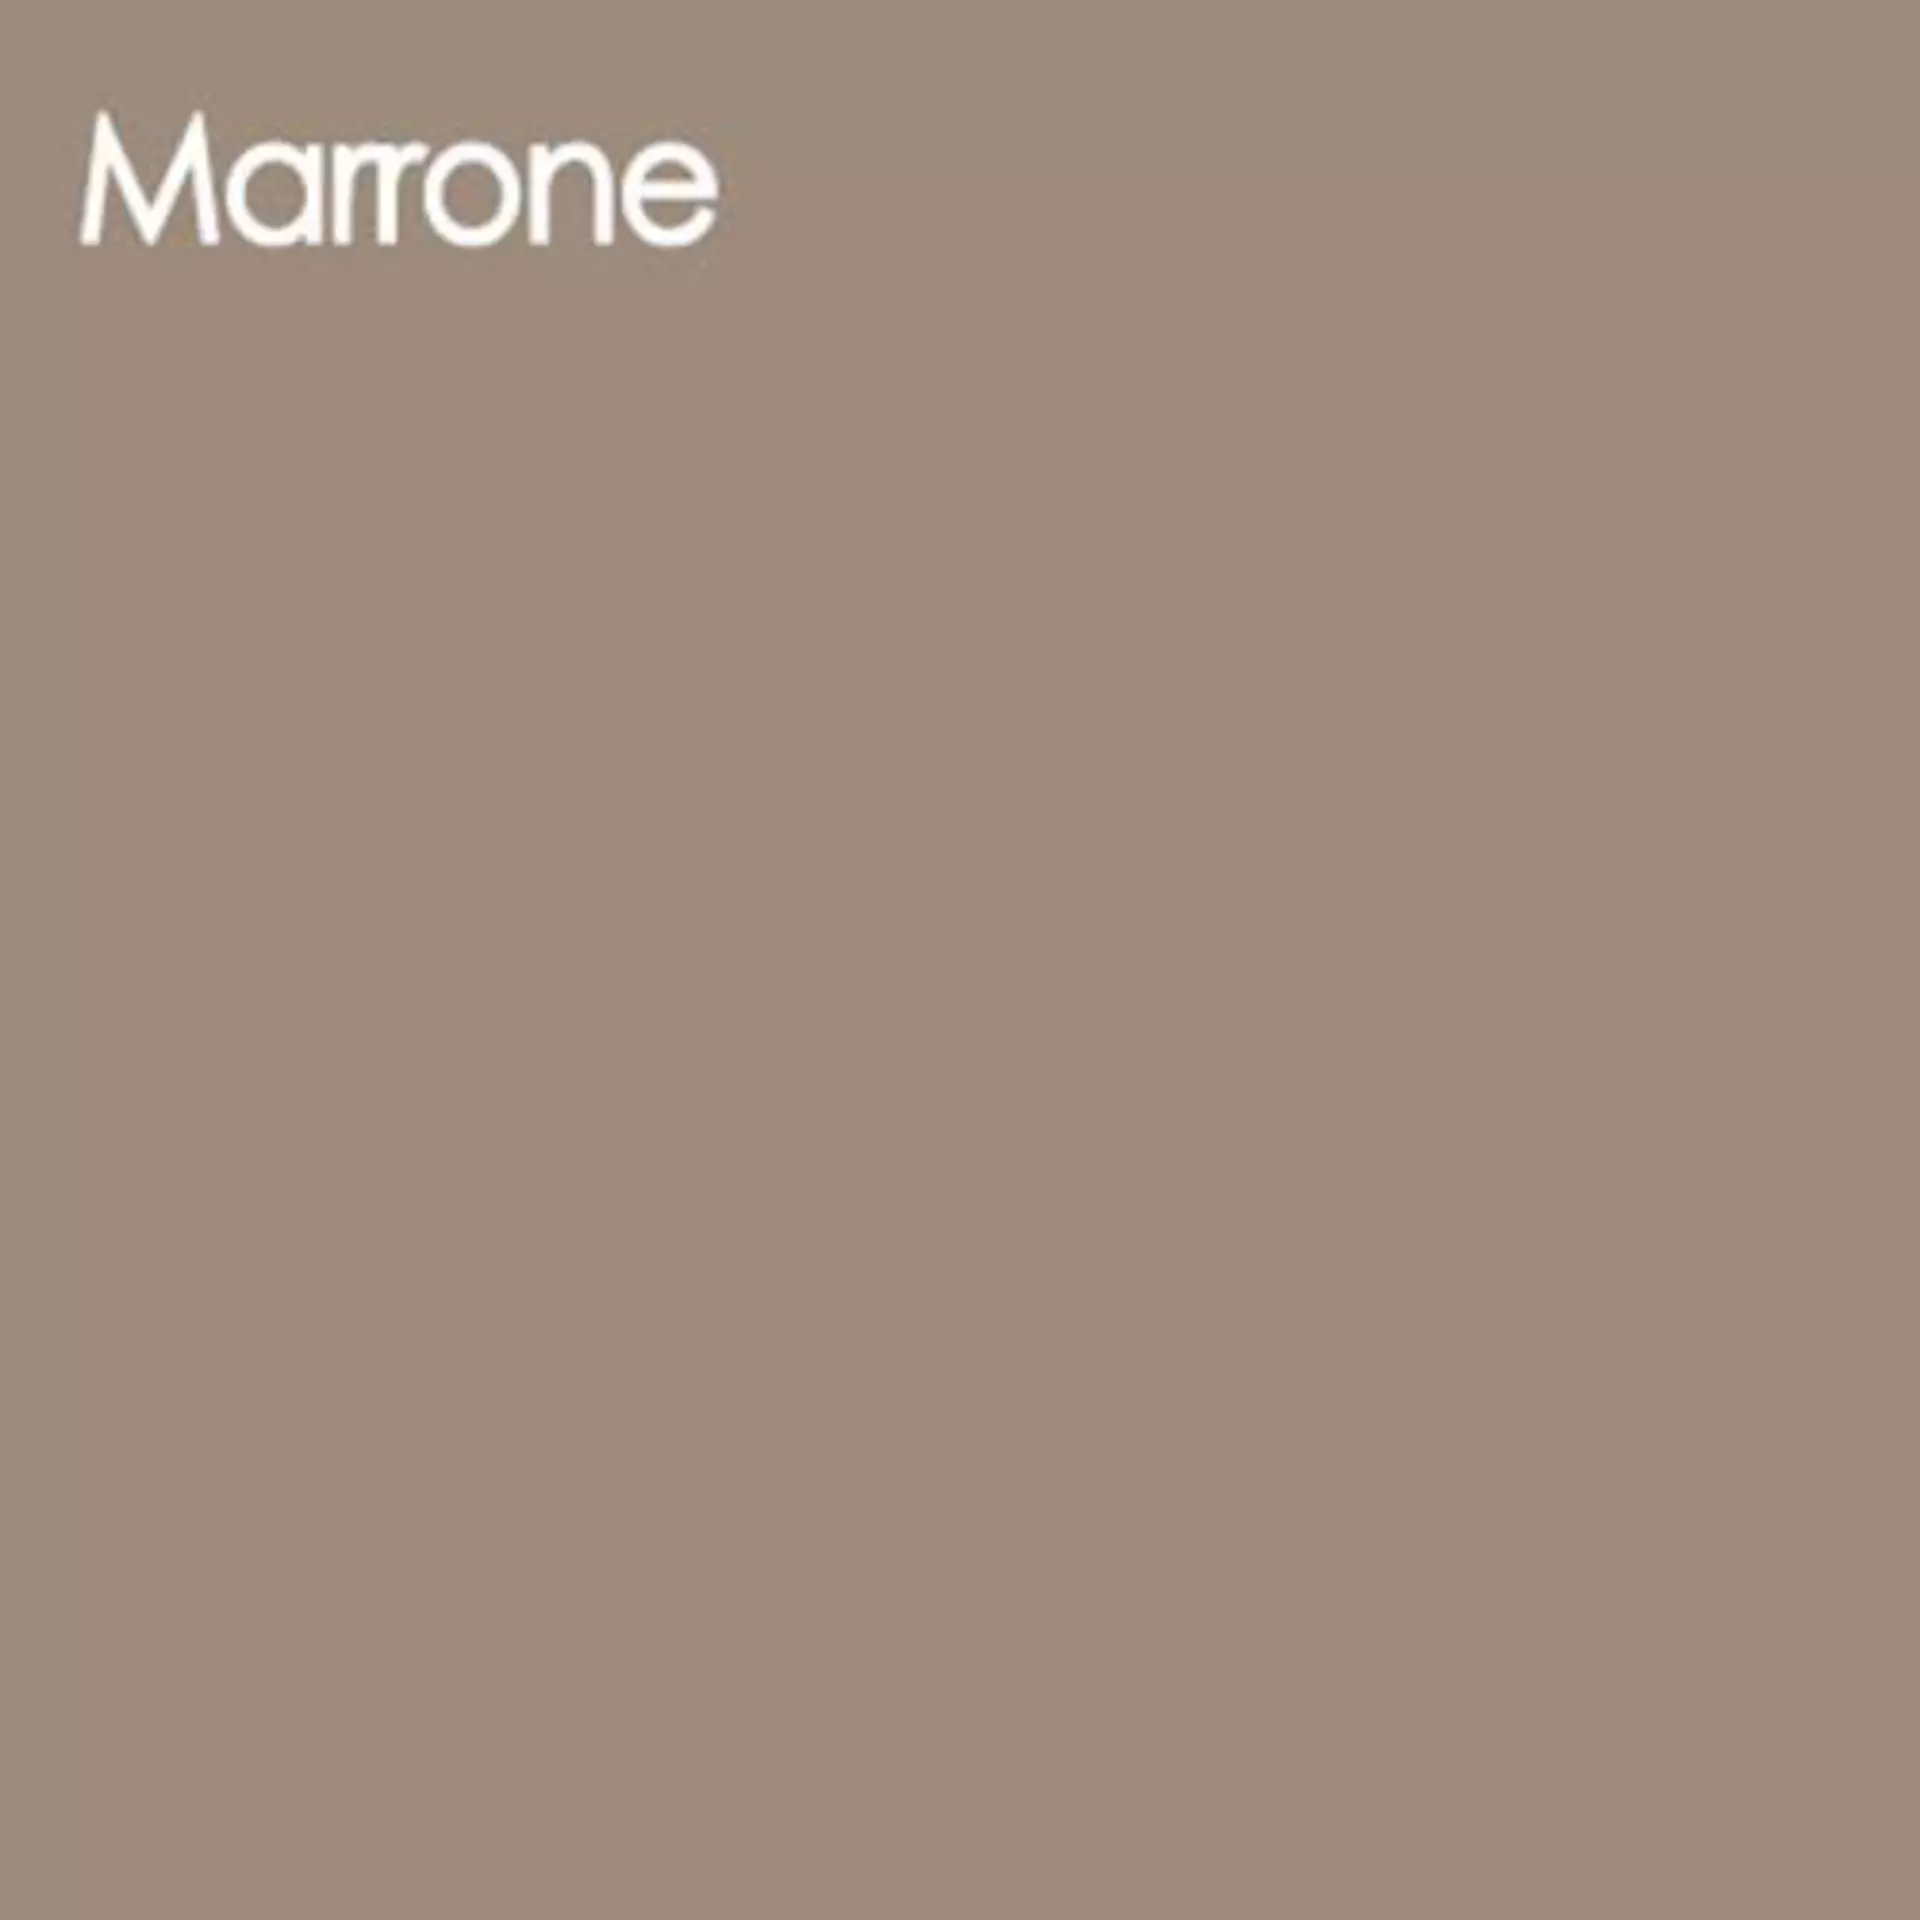 Arbeitsplatte aus Glas im creme-braunen Farbton Marrone